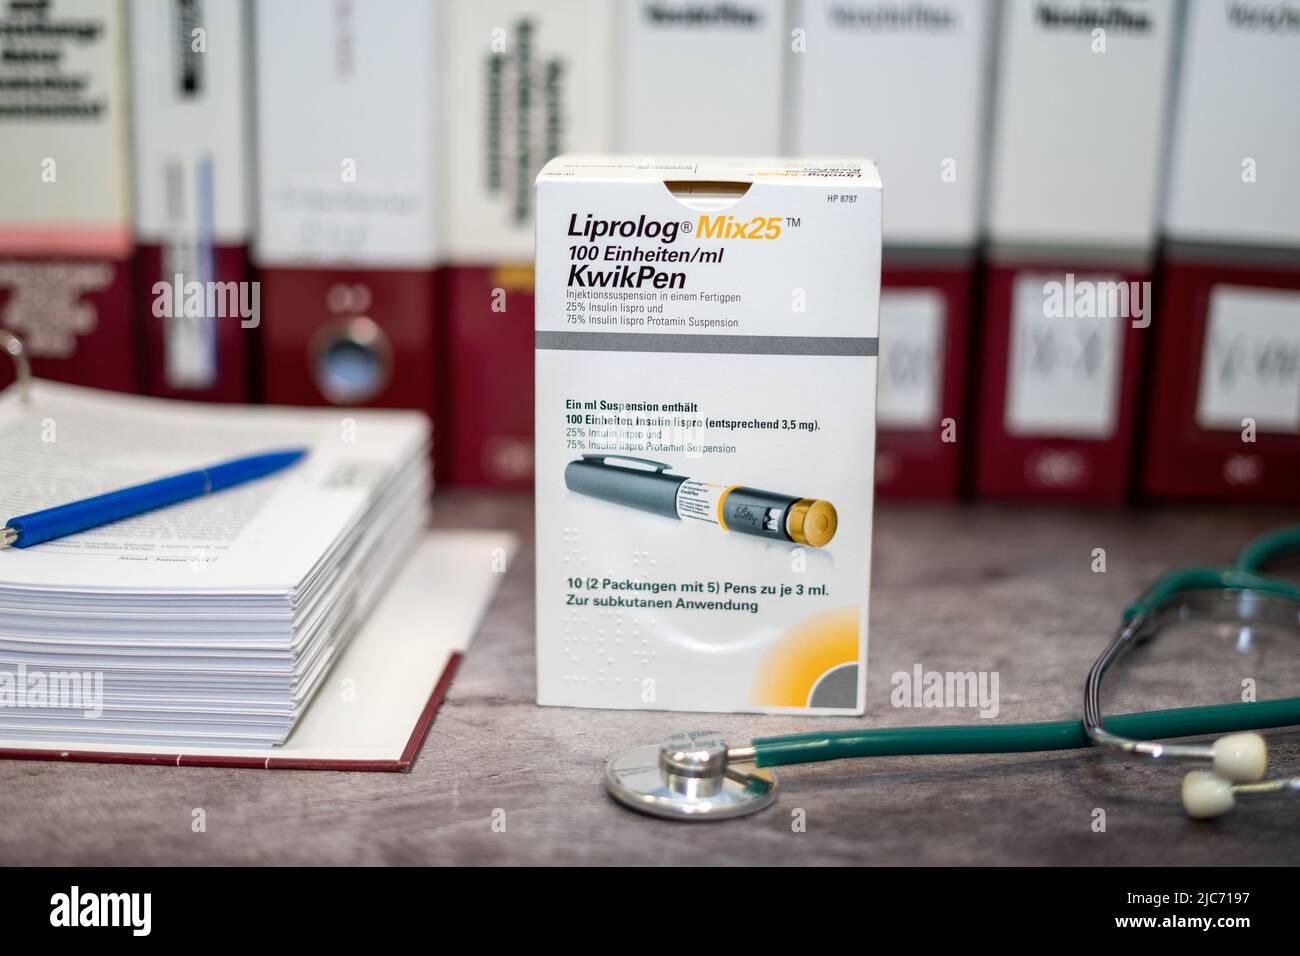 Medikament Liprolog, das Insulin-Lispro für Diabetes mellitus enthält, auf einem Tisch und im Hintergrund verschiedene medizinische Bücher. Stockfoto